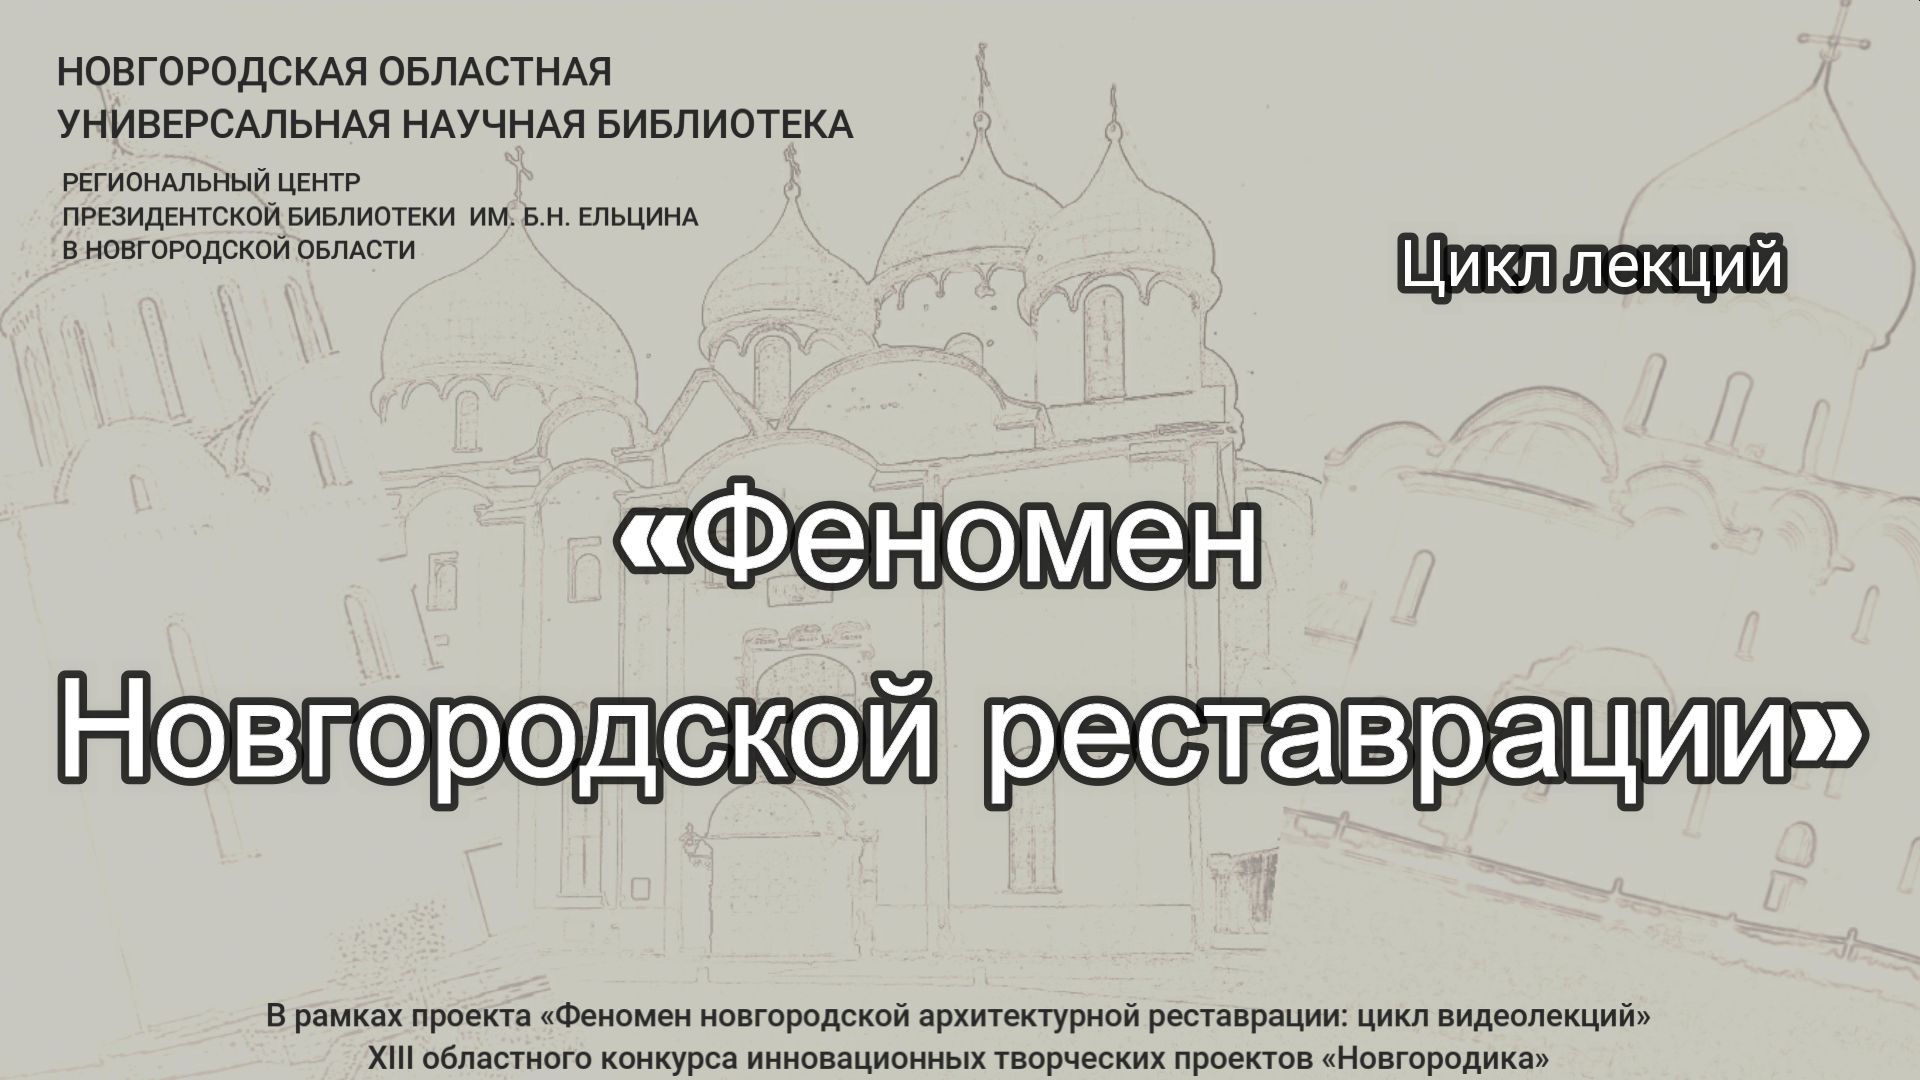 Цикл видеолекций «Феномен новгородской реставрации». Лекция 4